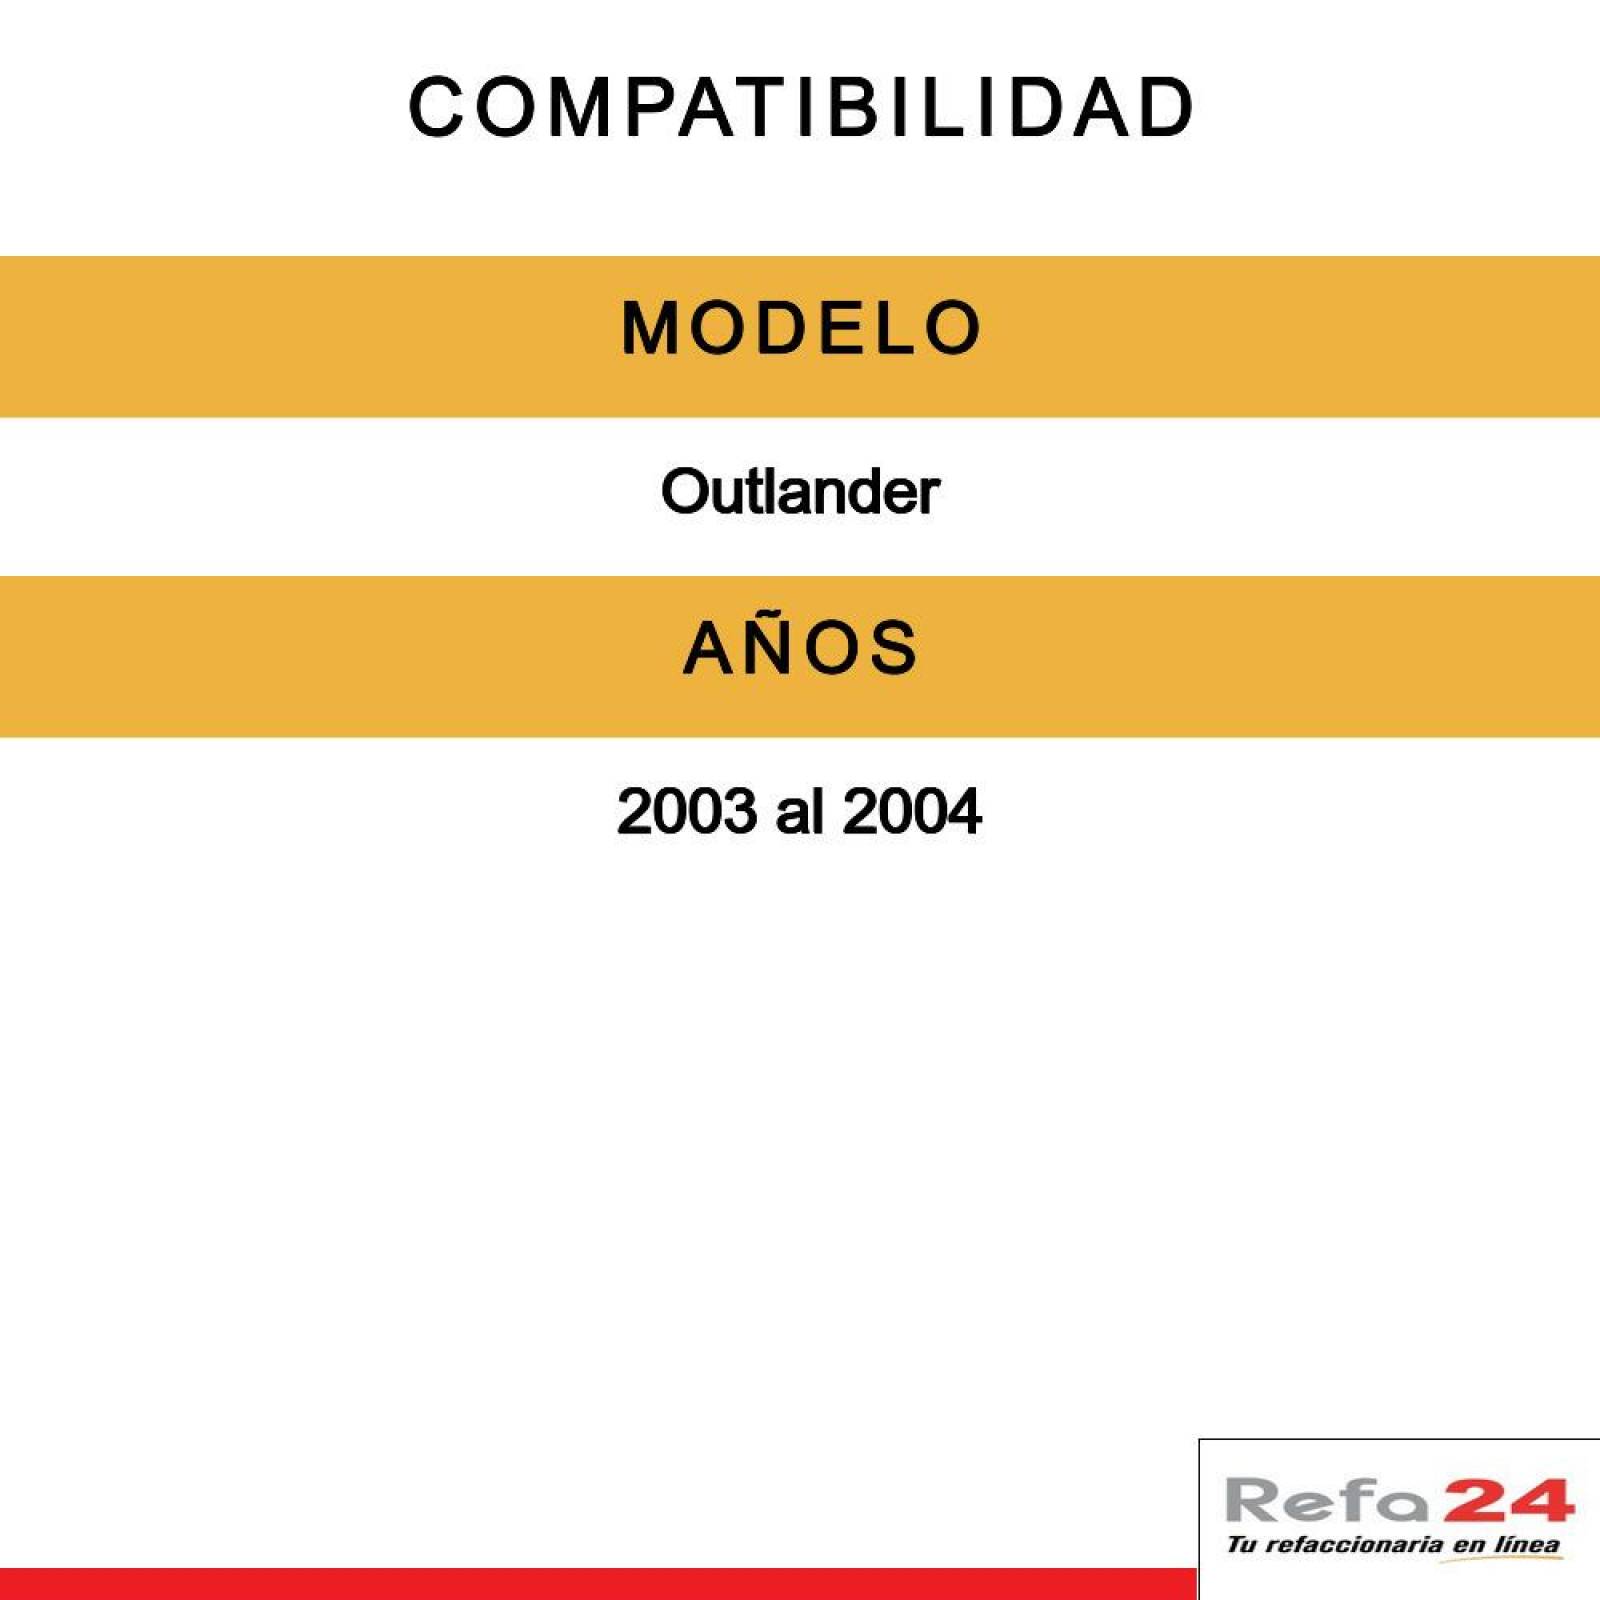 Amortiguador De Suspensión Sachs - Compatible Con Mitsubishi Outcompatible Con Lander 2003-2004 